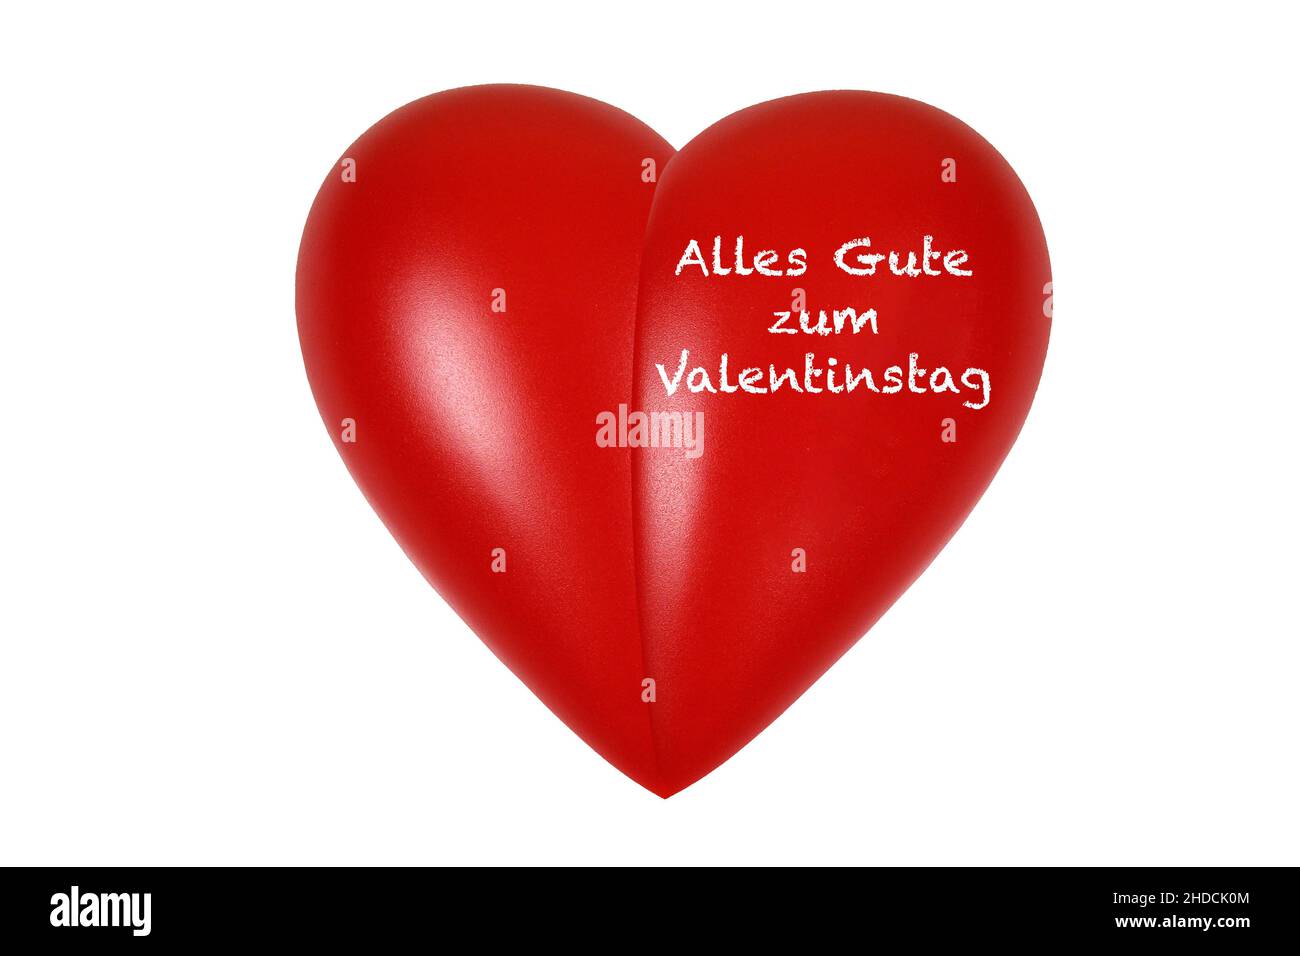 Rotes Herz, Organ, Gesundheit, Körperteil, Alles Gute zum Valentinstag, Stock Photo